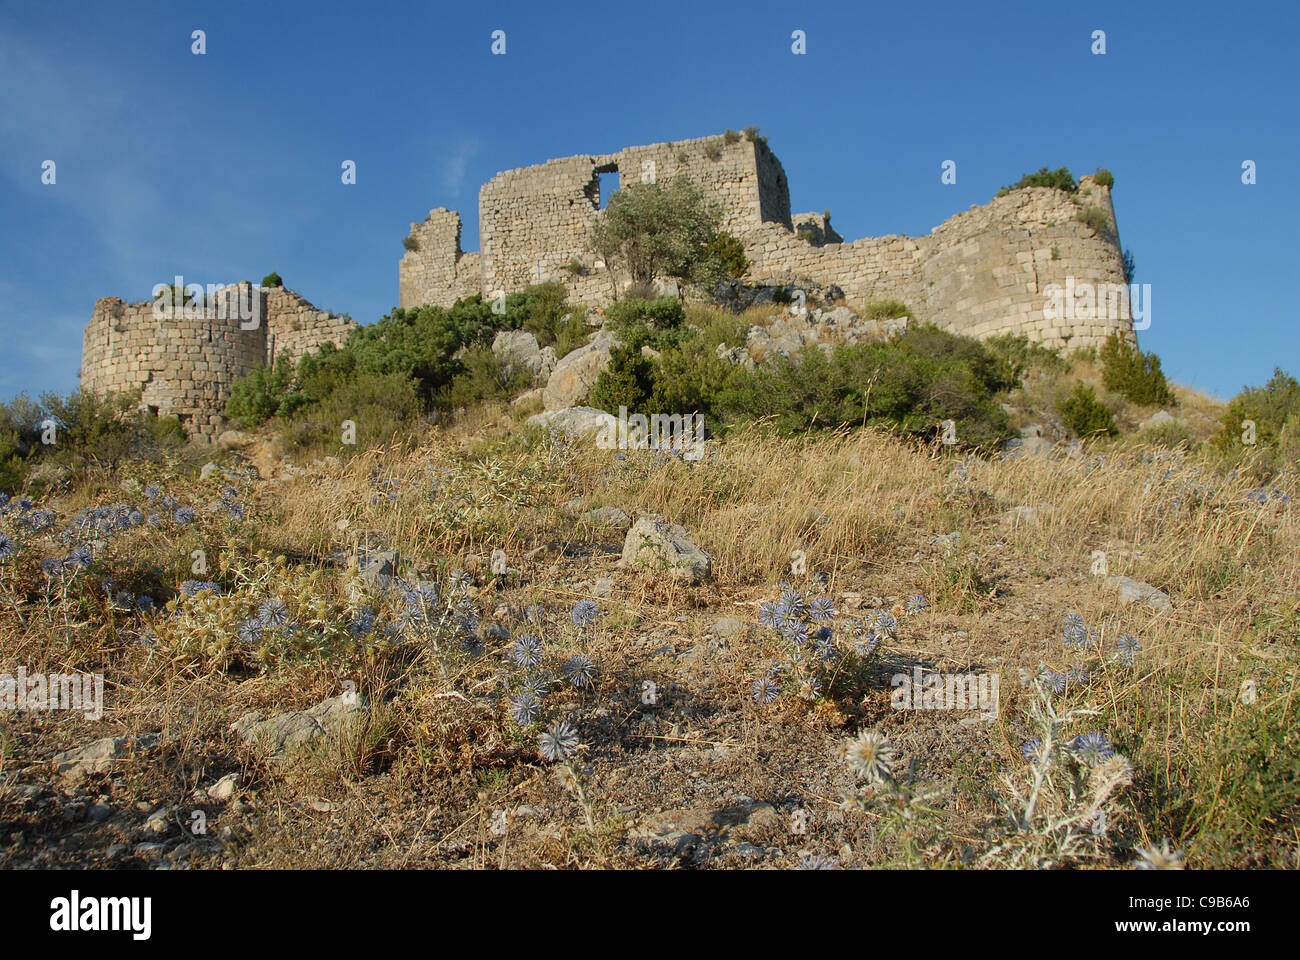 La ruine du château d'Aguilar, un château médiéval construit par les Cathares près de Tuchan dans le Pays Cathare, Aude, France Banque D'Images